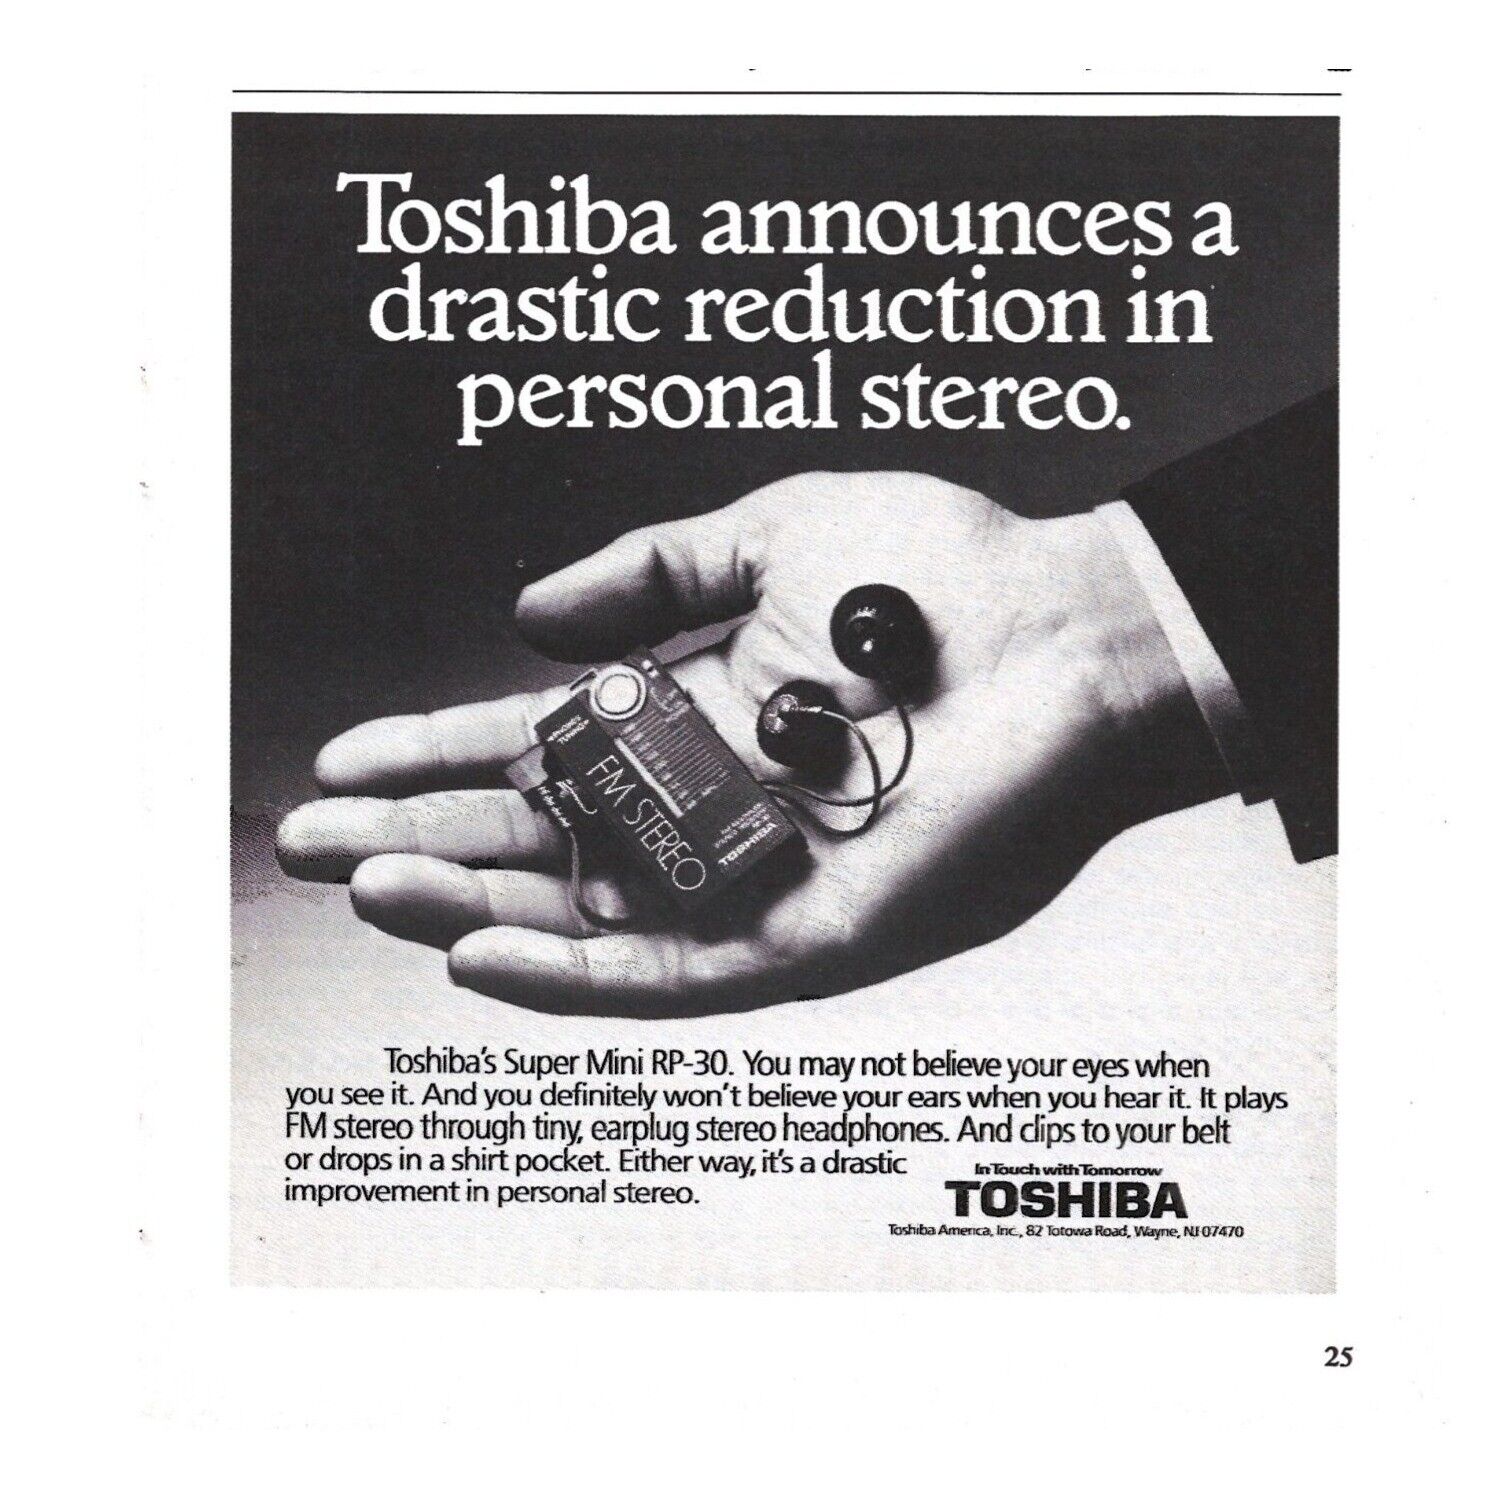 Toshiba Super Mini FM Stereo Headphones Earplug 1980s Vintage Print Ad 5.75 inch